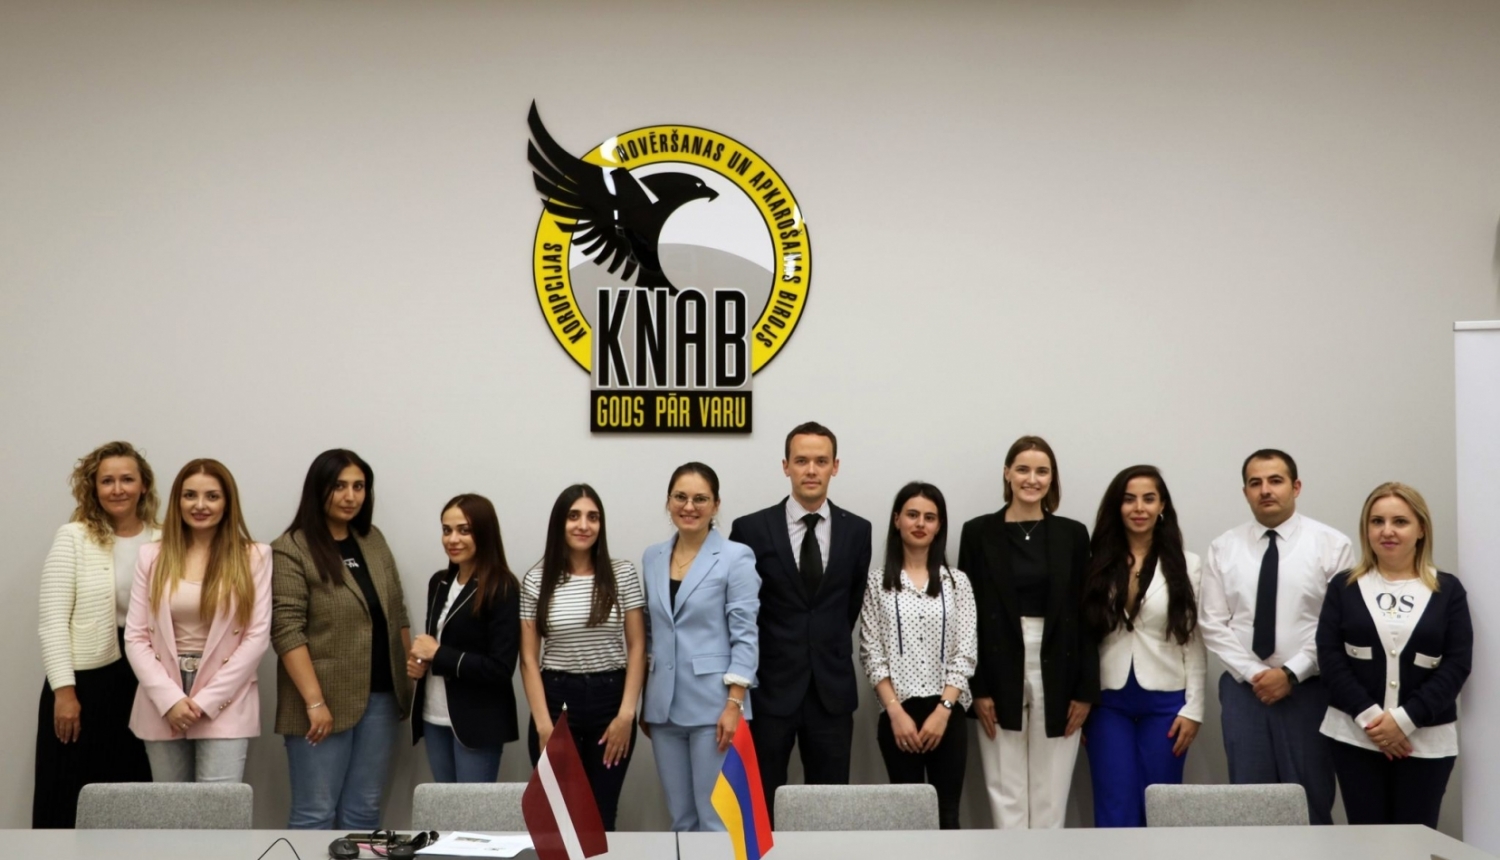 Attēlā redzami KNAB, Tieslietu ministrijas un Armēnijas Tieslietu ministrijas pārstāvjus